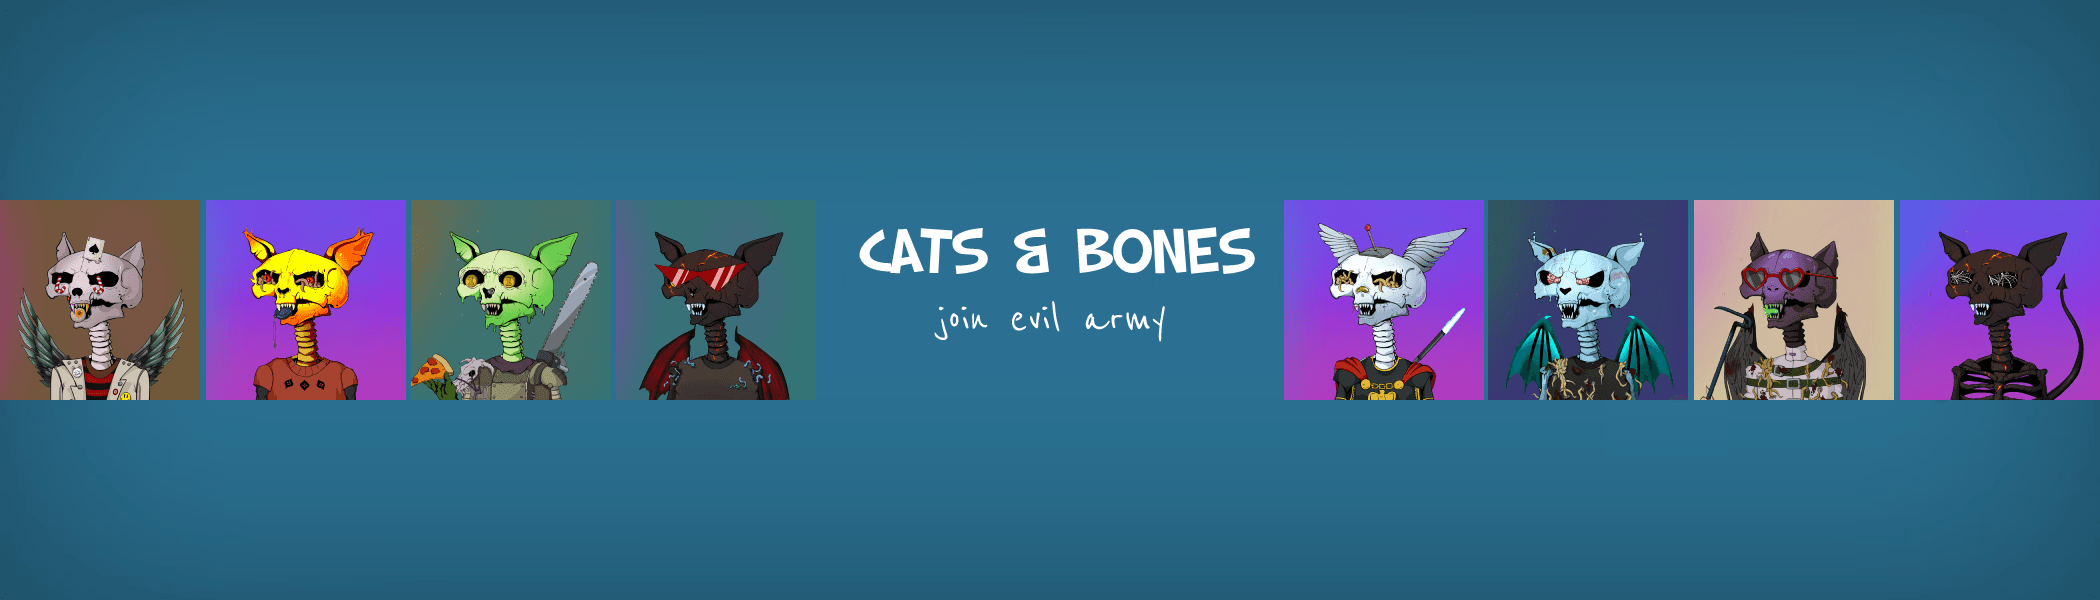 Cats & Bones Official